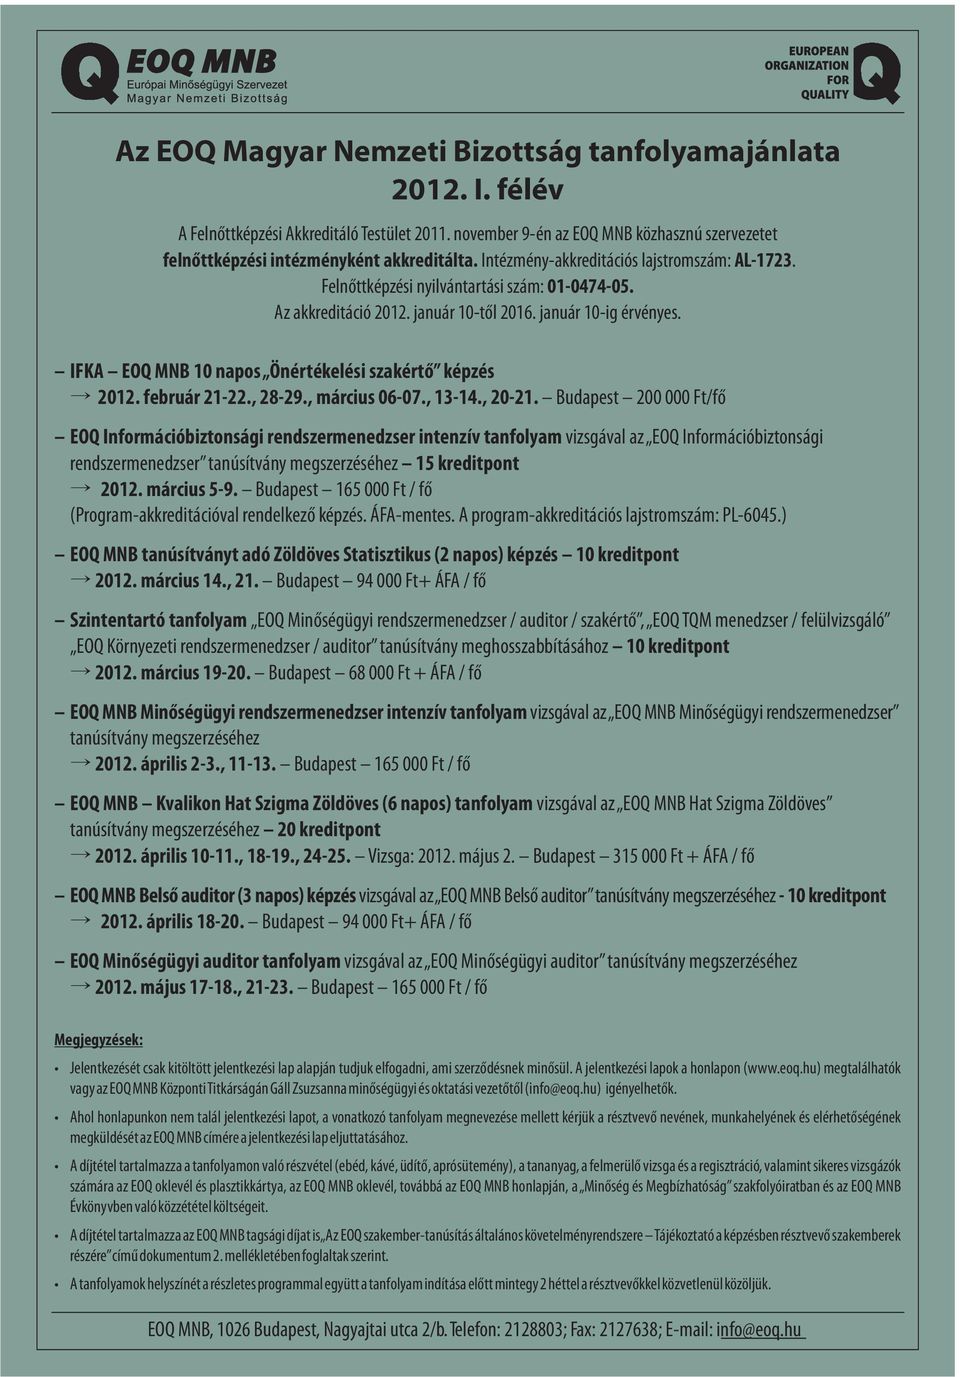 IFKA EOQ MNB 10 napos Önértékelési szakértő képzés 2012. február 21-22., 28-29., március 06-07., 13-14., 20-21.